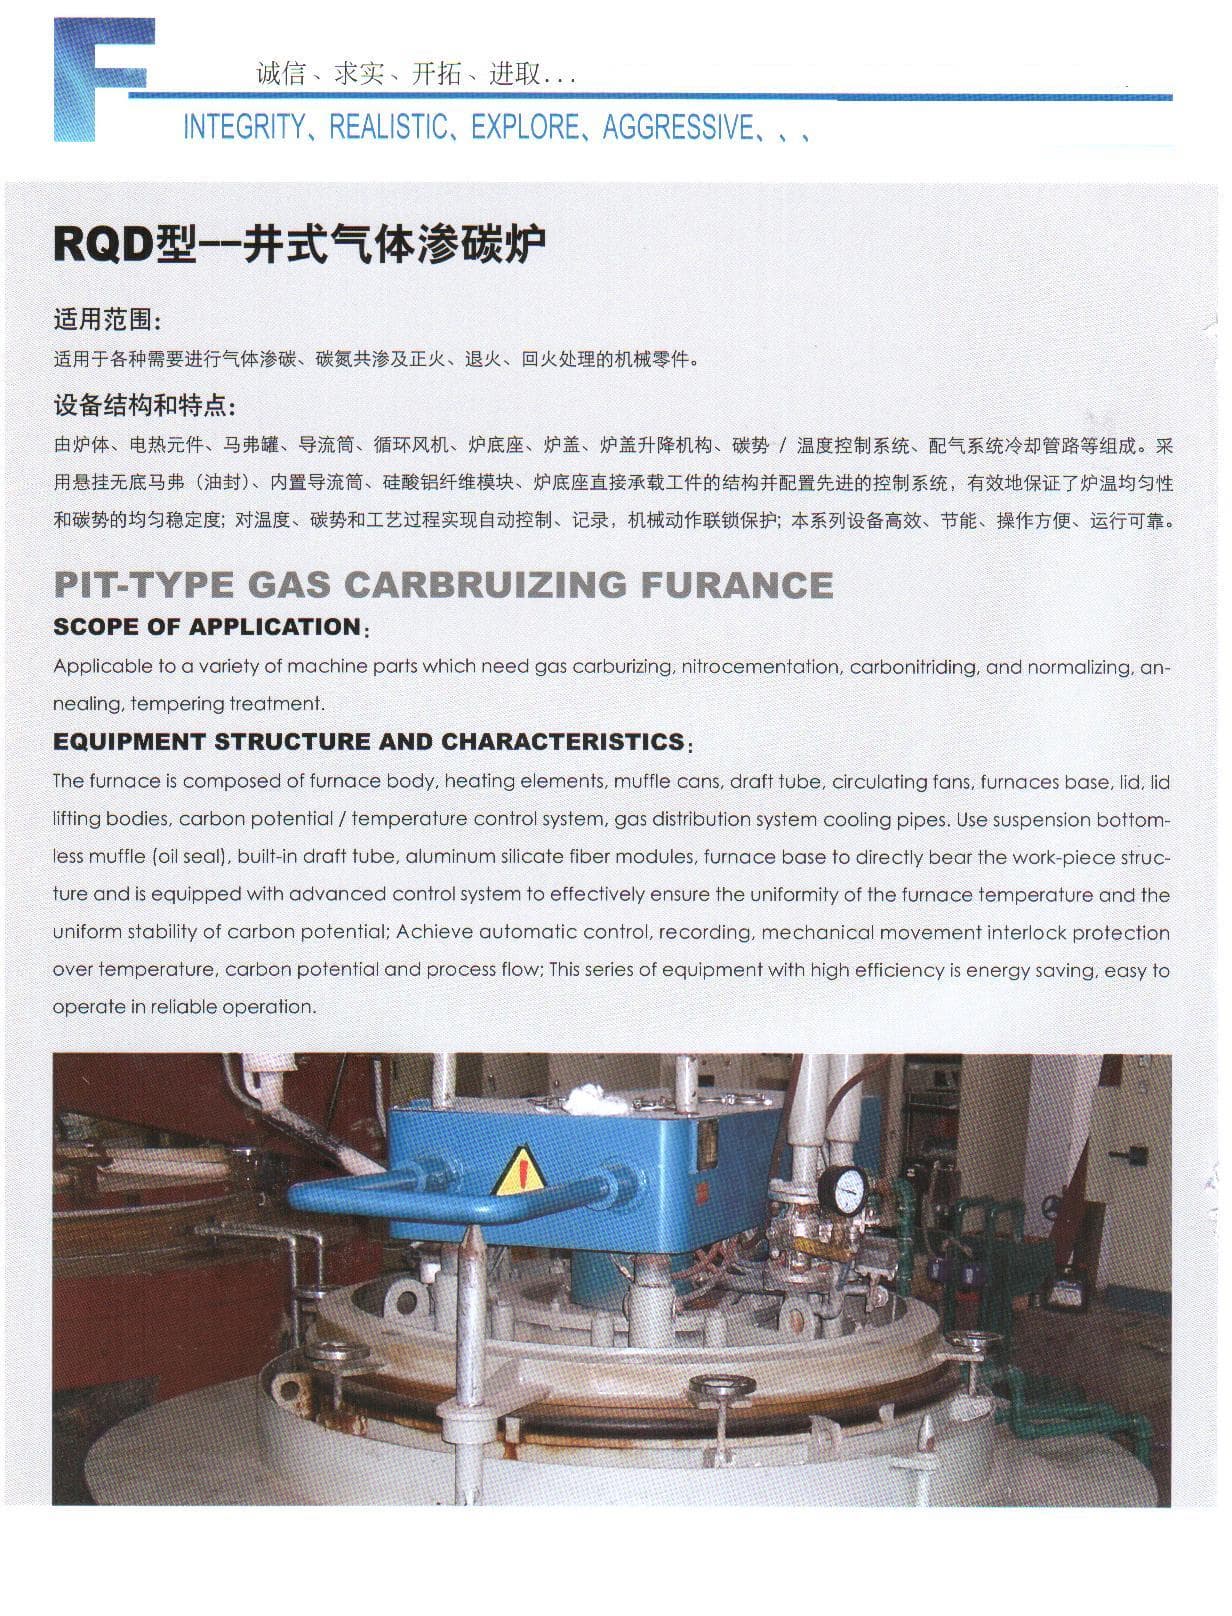 Pit_type gas carburizing furnace